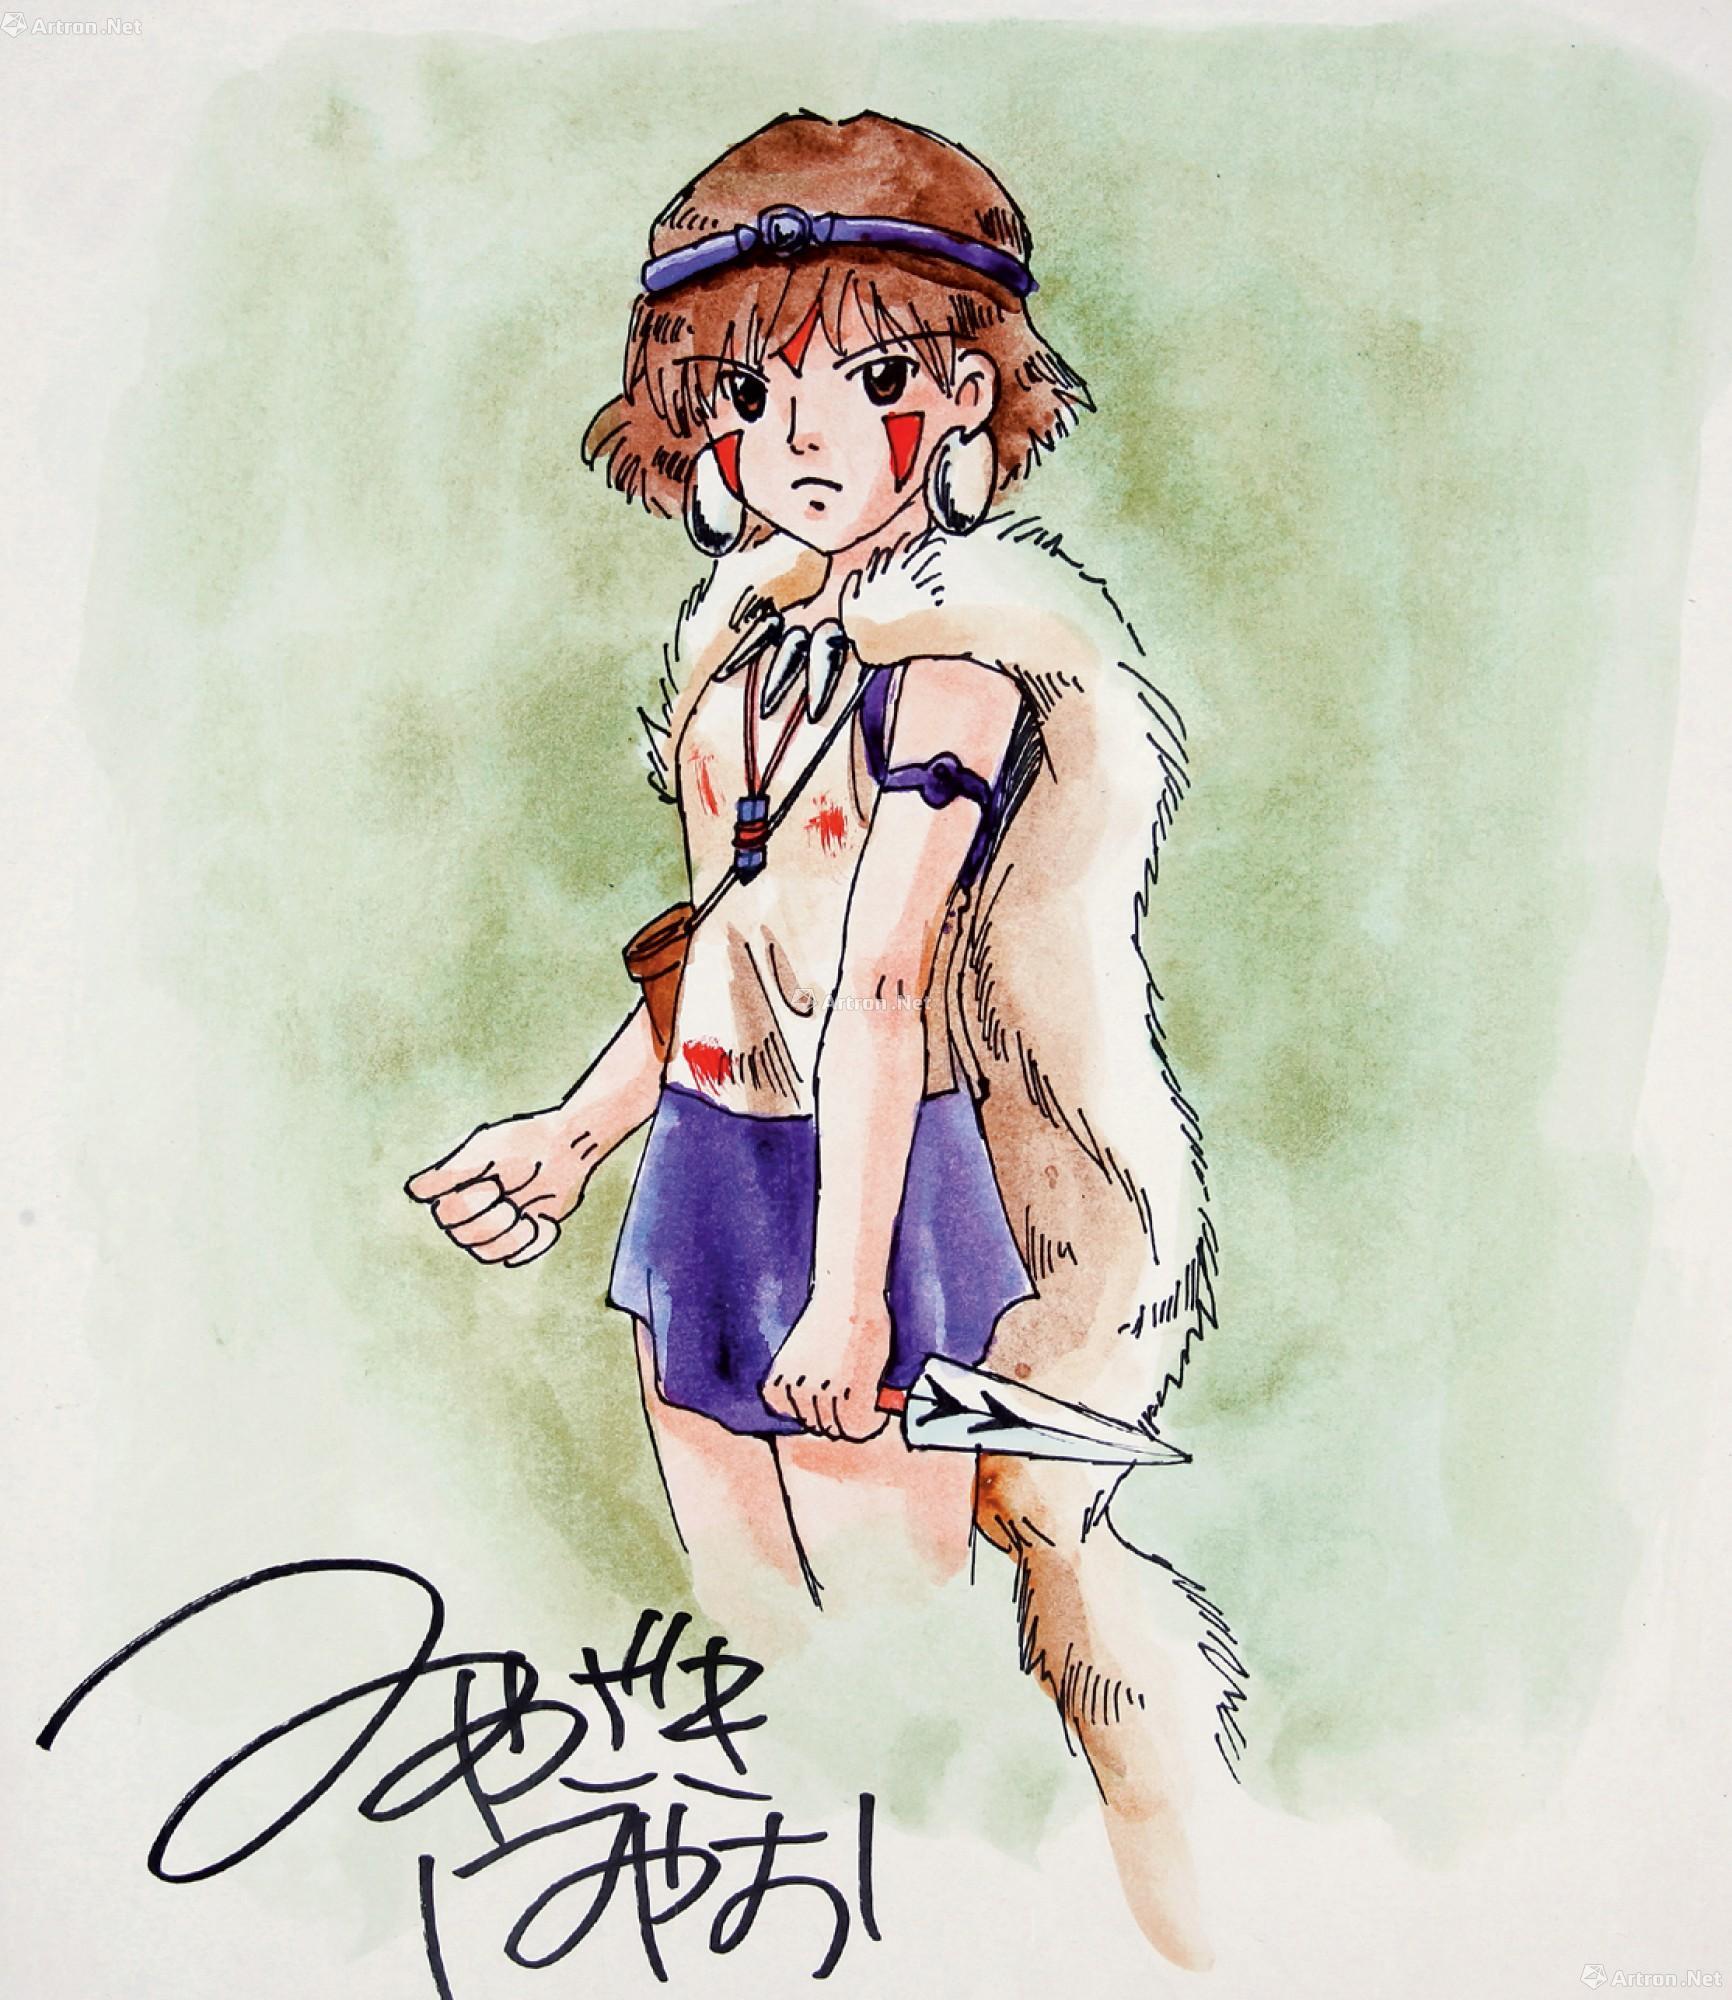 4250现代卡通人物彩色原稿宫崎骏绘幽灵公主卡通人物彩色原稿一幅